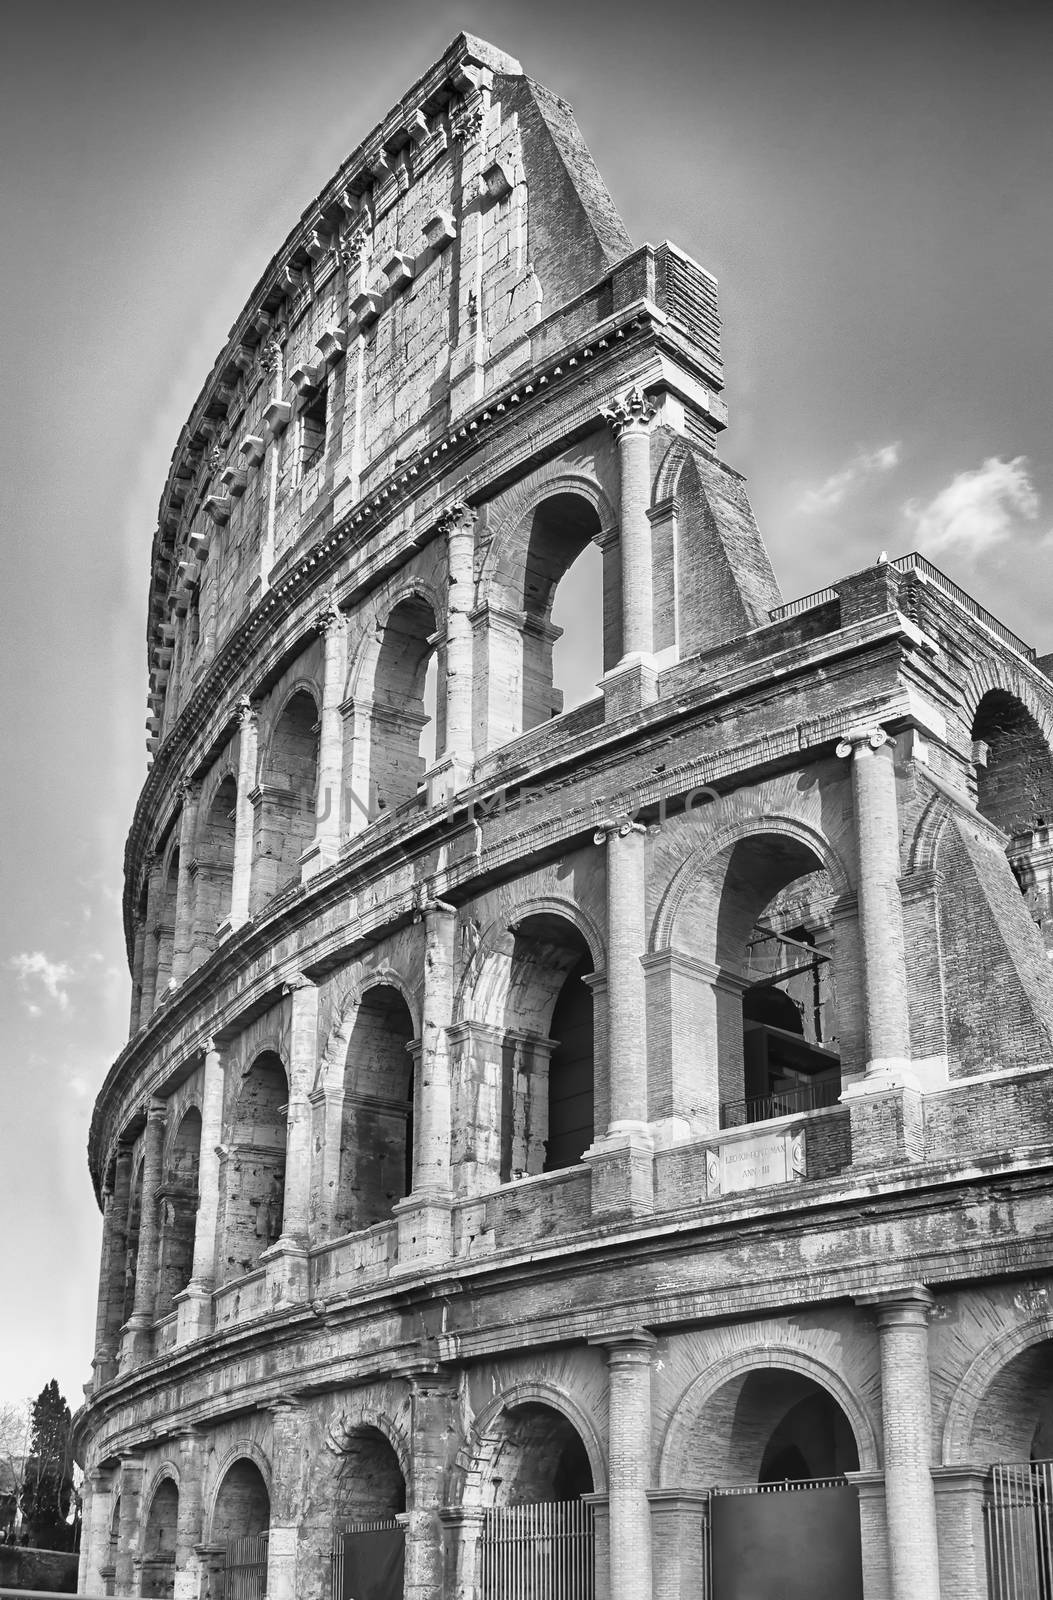 The Colosseum, Rome by marcorubino